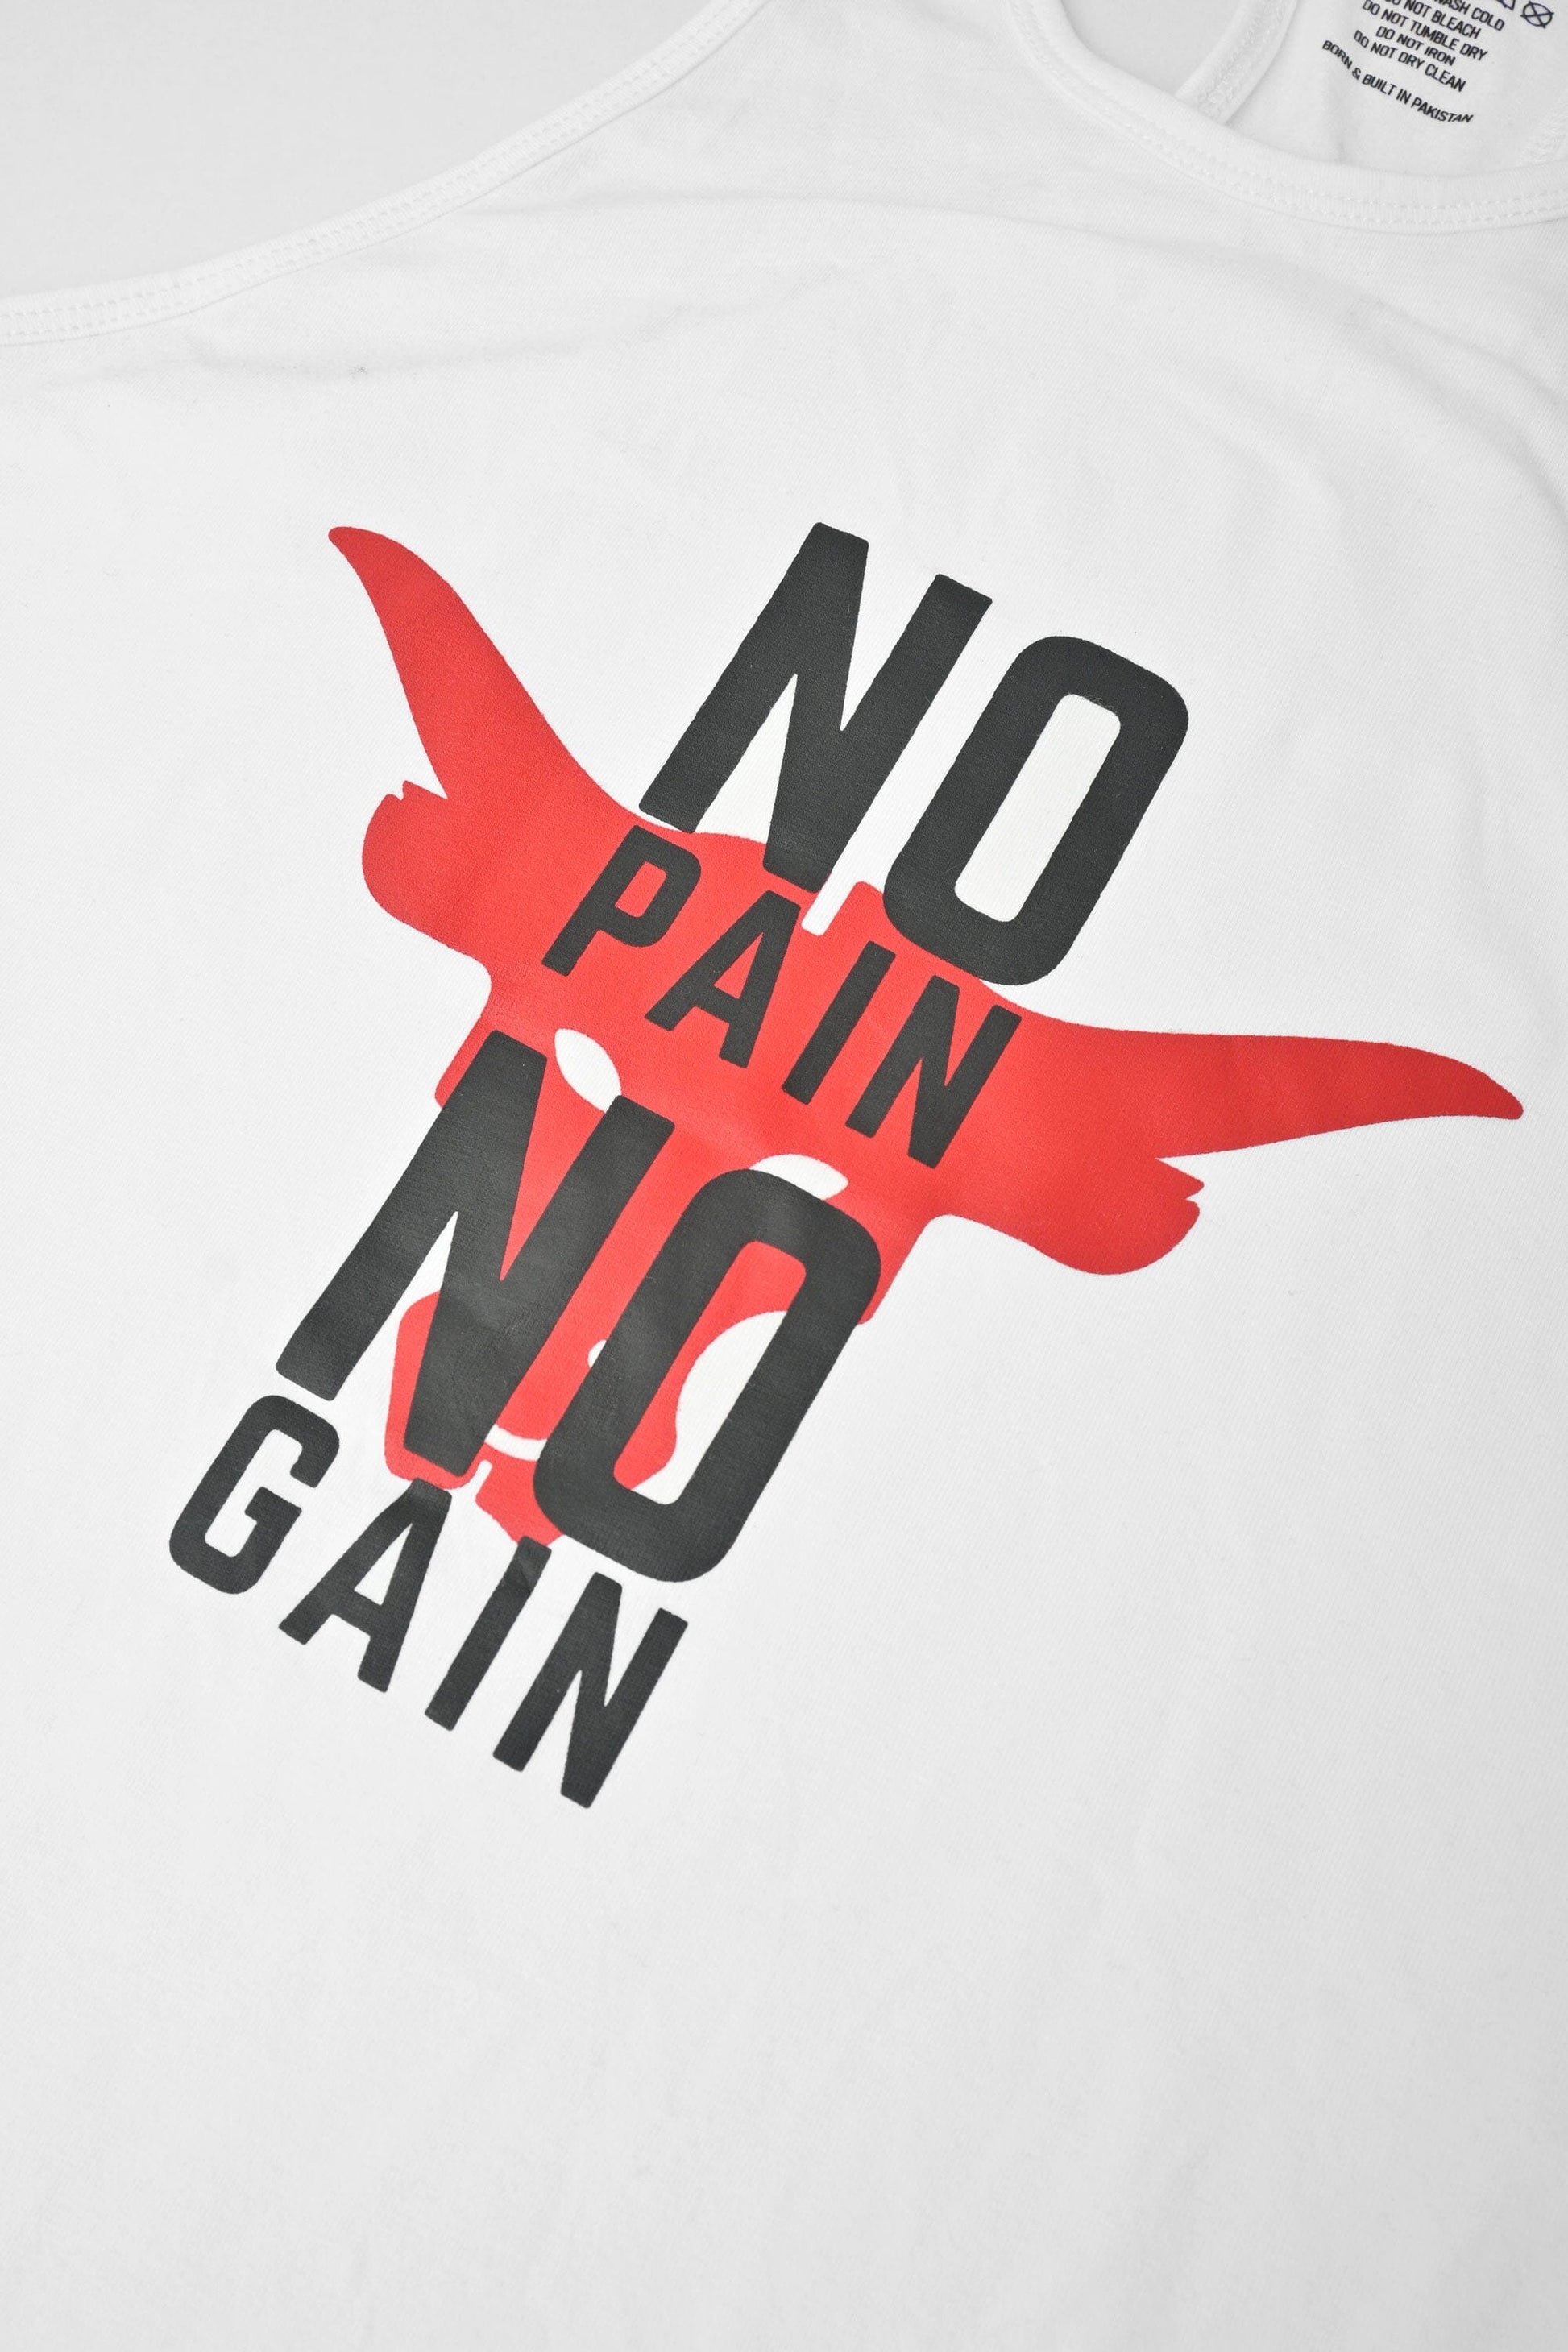 Polo Athletica Men's No Pain No Gain Printed Activewear Tank Top